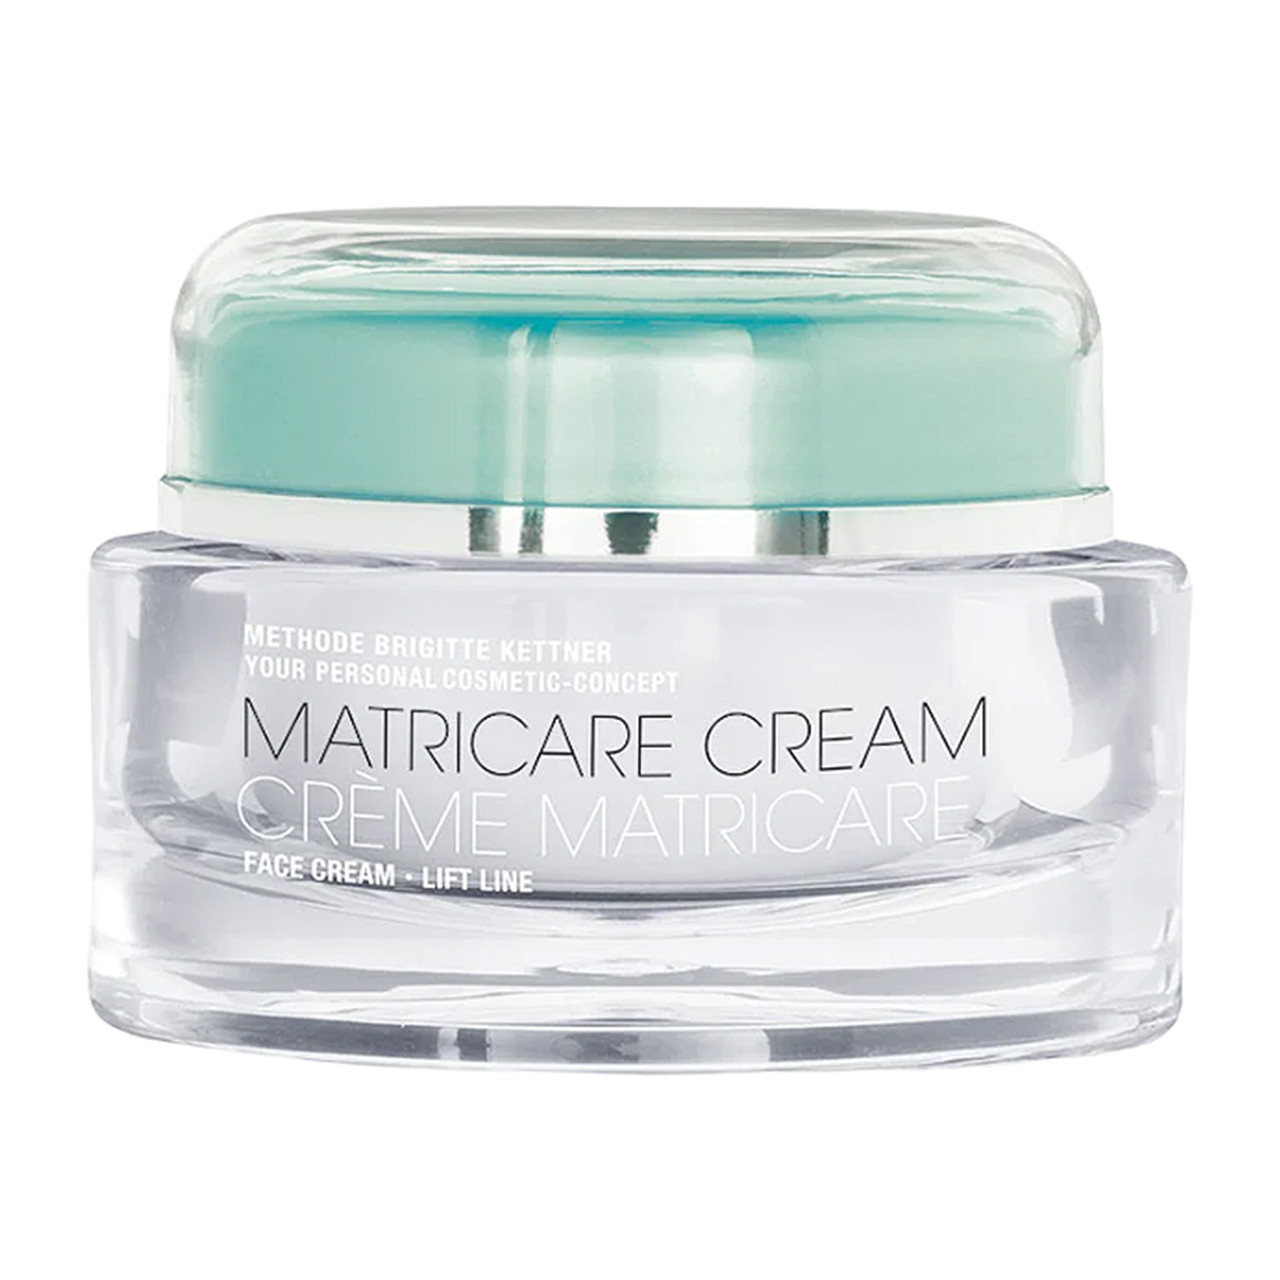 MBK Skincare Matricare Cream - 1.69 oz